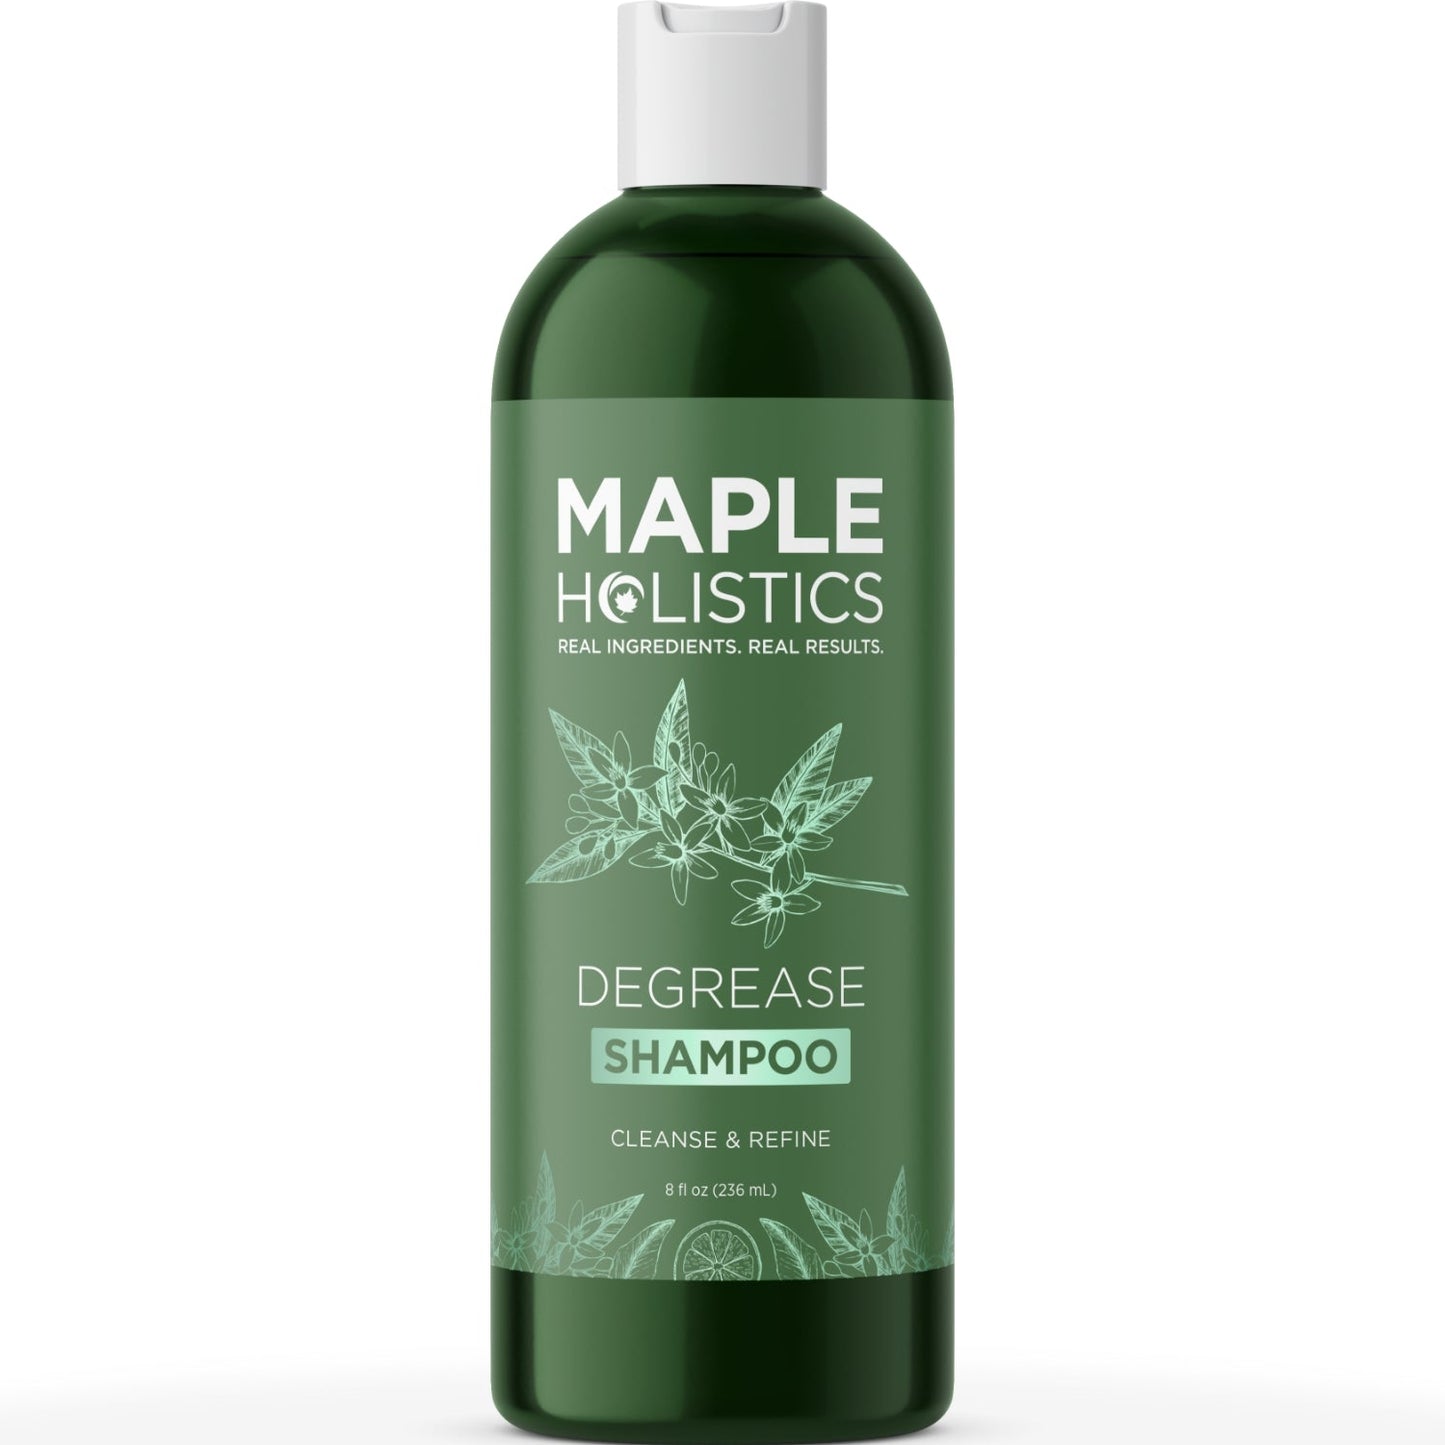 Degrease Shampoo